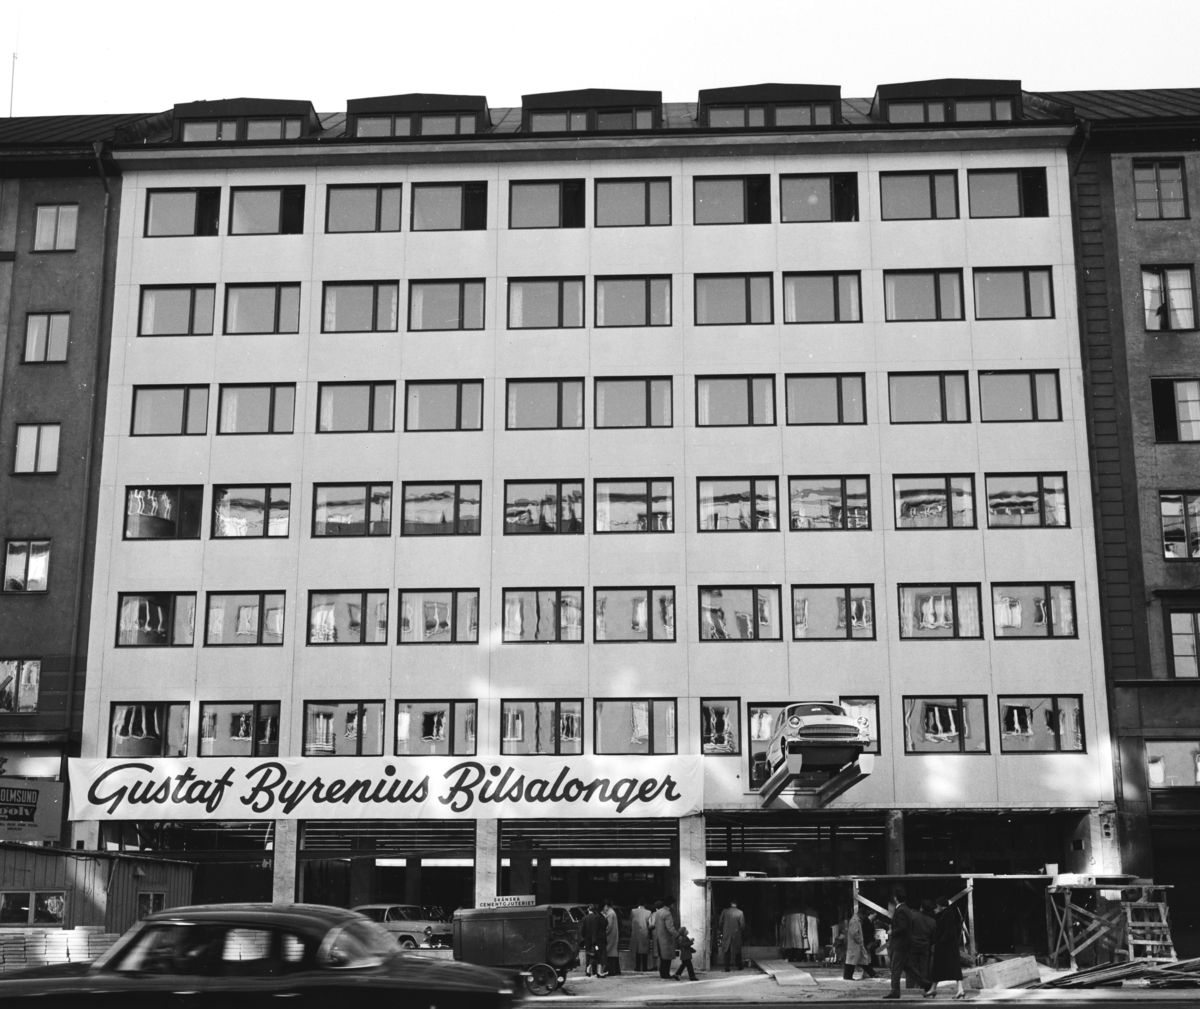 Gustaf Byrenius bilsalonger
Exteriör, byggnad med butik, kontor och bostäder